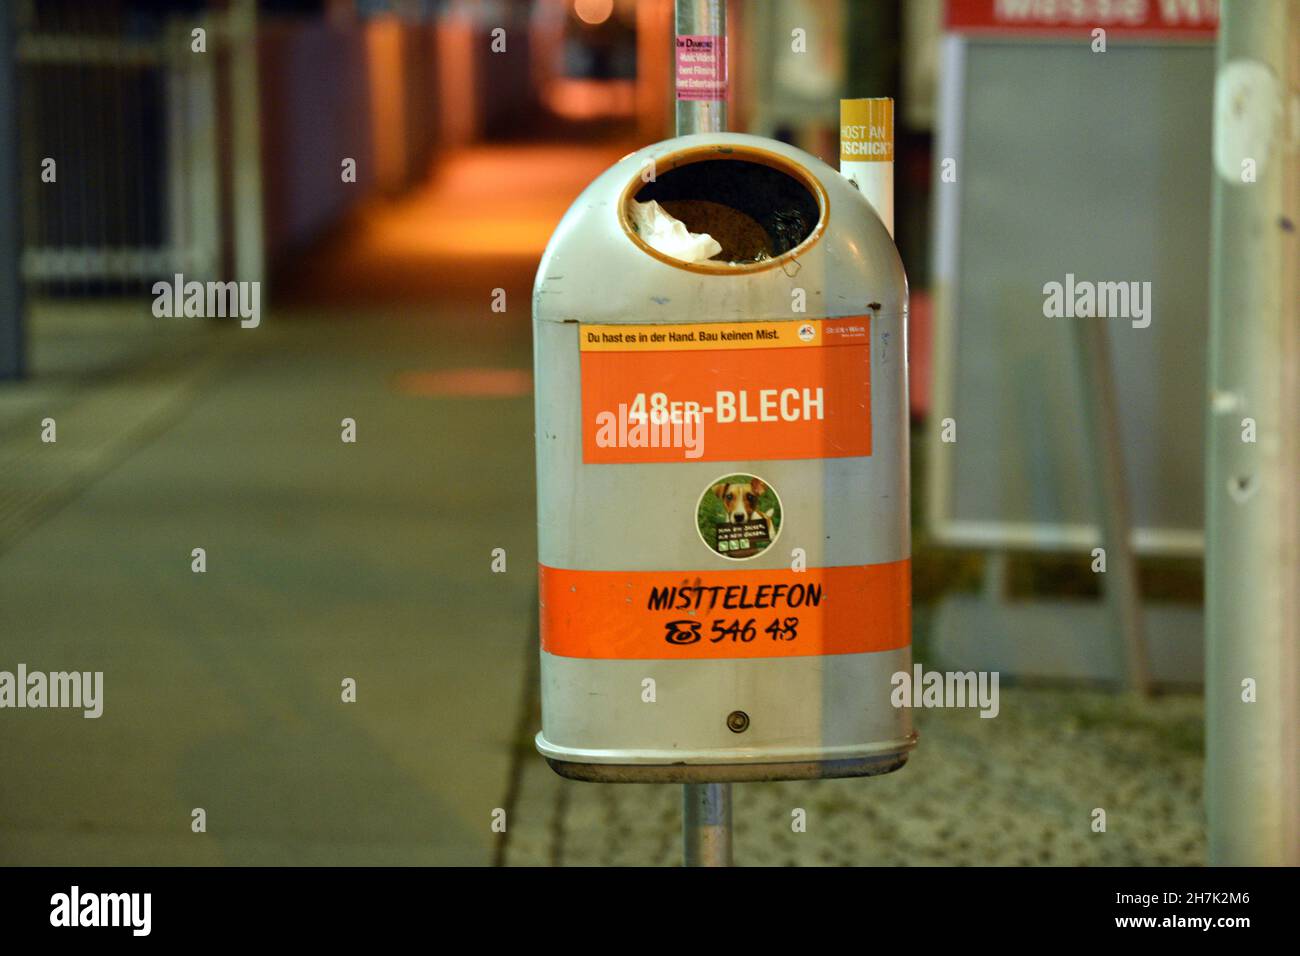 Abfallbehälter und Aschenbecher in Wien, Österreich, Europa - Litter bin and ashtray in Vienna, Austria, Europe Stock Photo